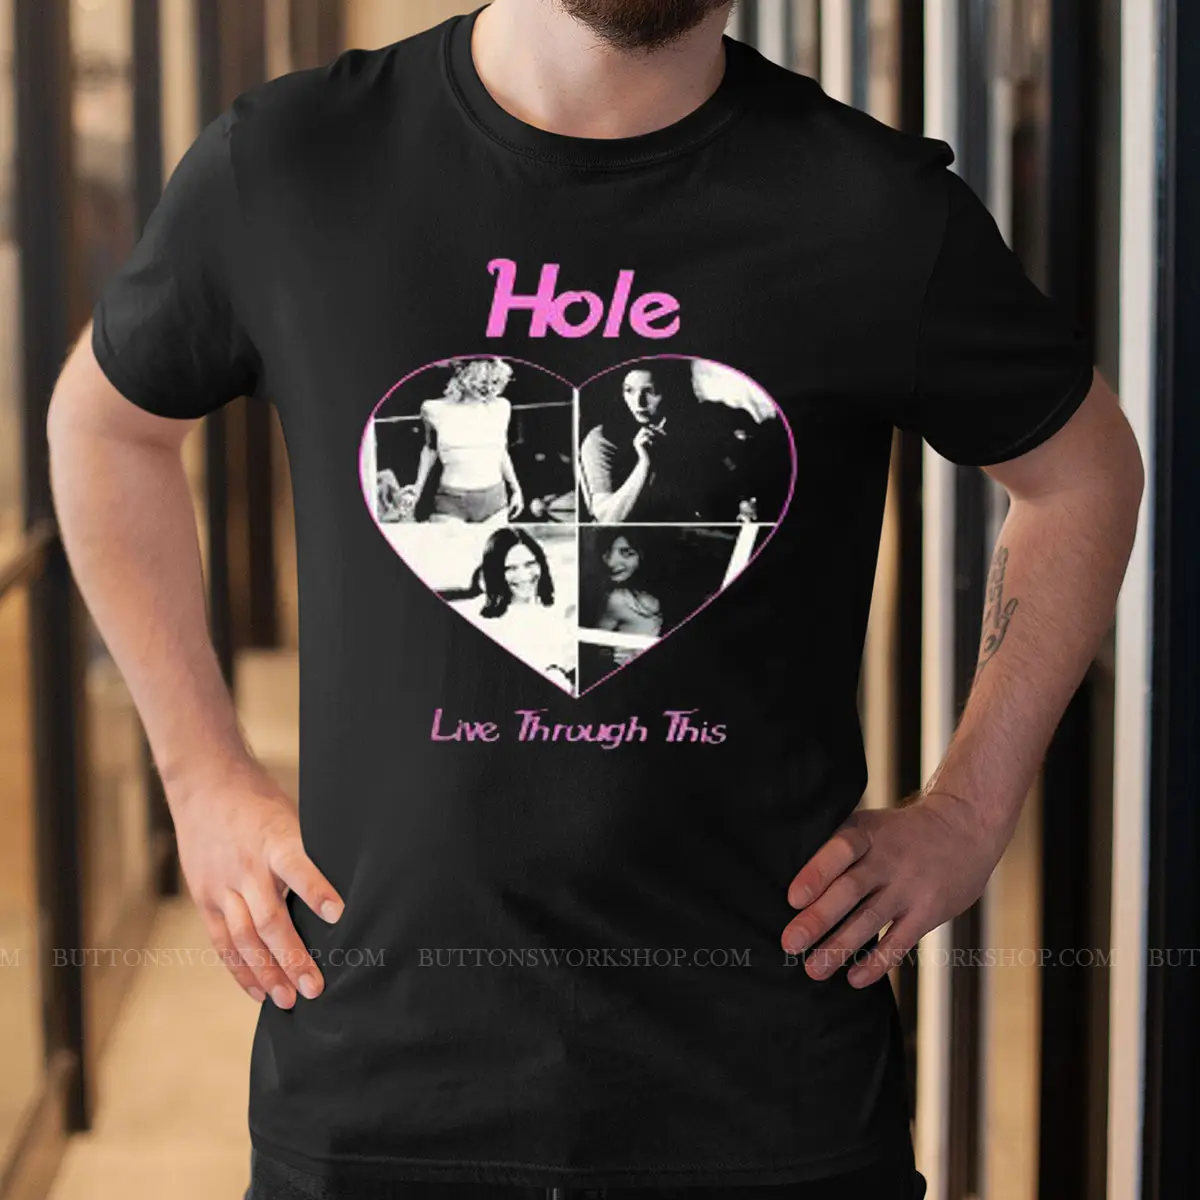 Hole Band T Shirt Unisex Tshirt